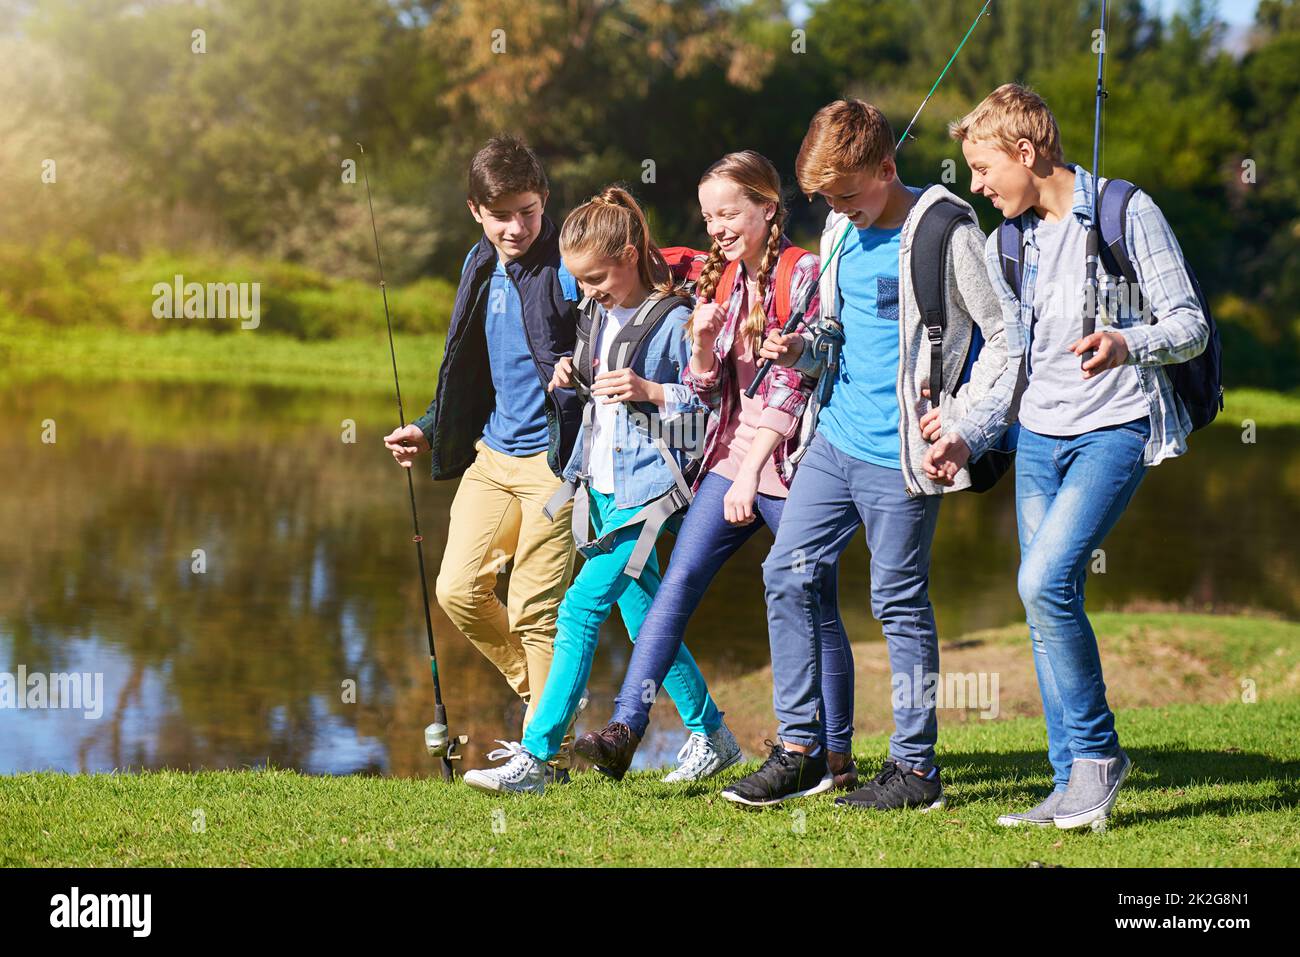 Outdoor-Abenteuer mit Freunden. Eine Gruppe junger Freunde, die Rucksäcke tragen, läuft zusammen an einem See entlang. Stockfoto